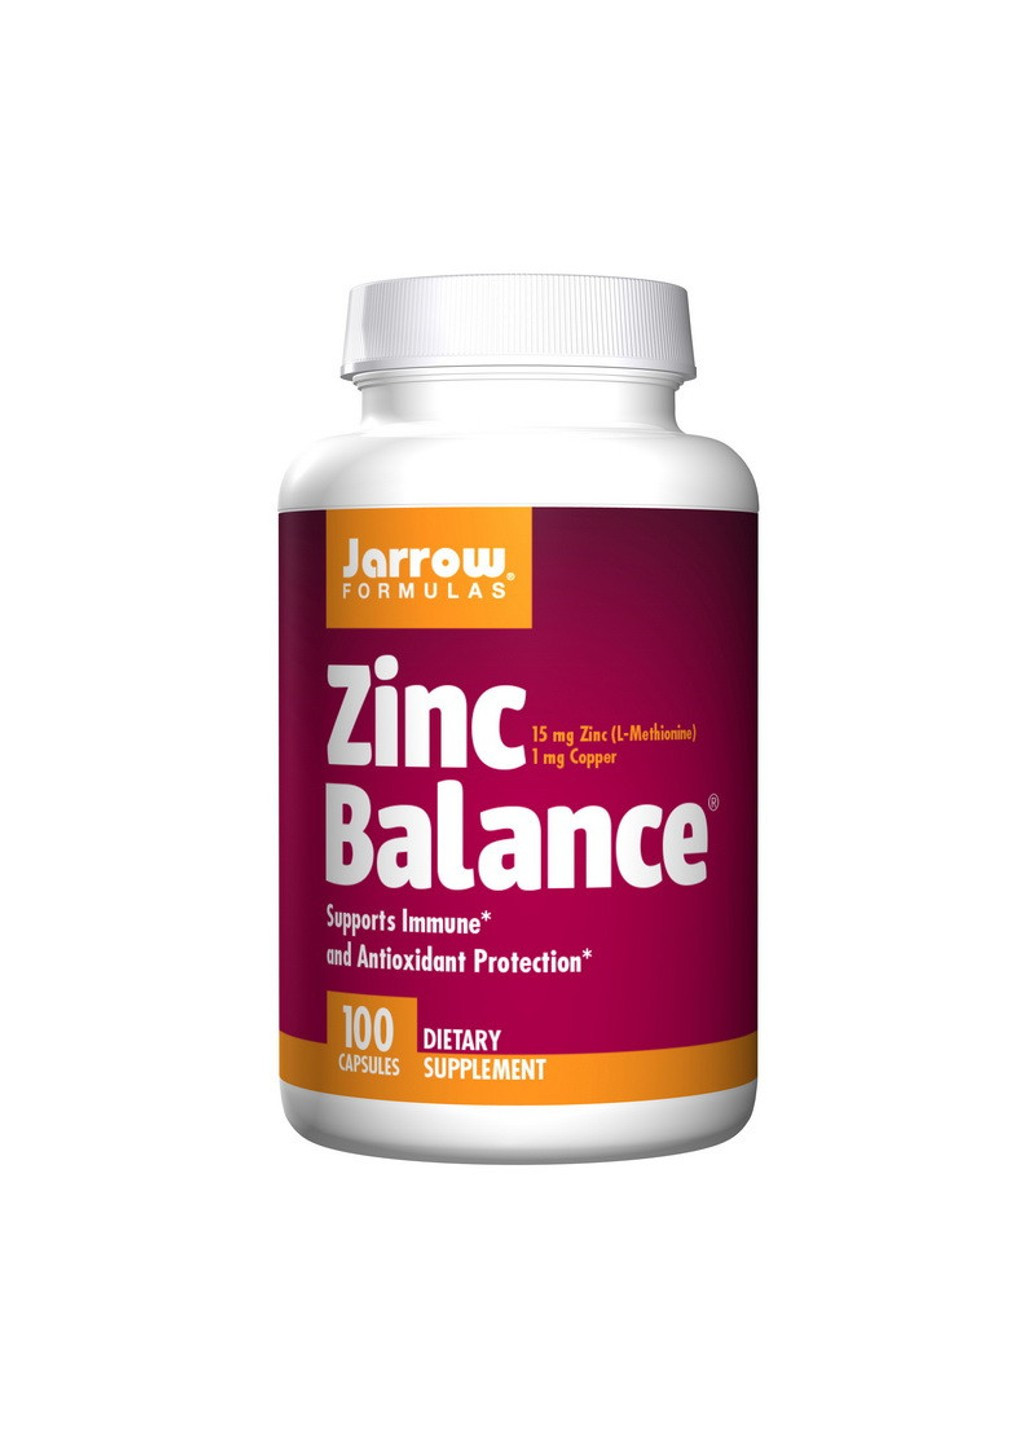 Цинк Zinc Balance (100 caps) джарроу формула Jarrow Formulas (255410211)